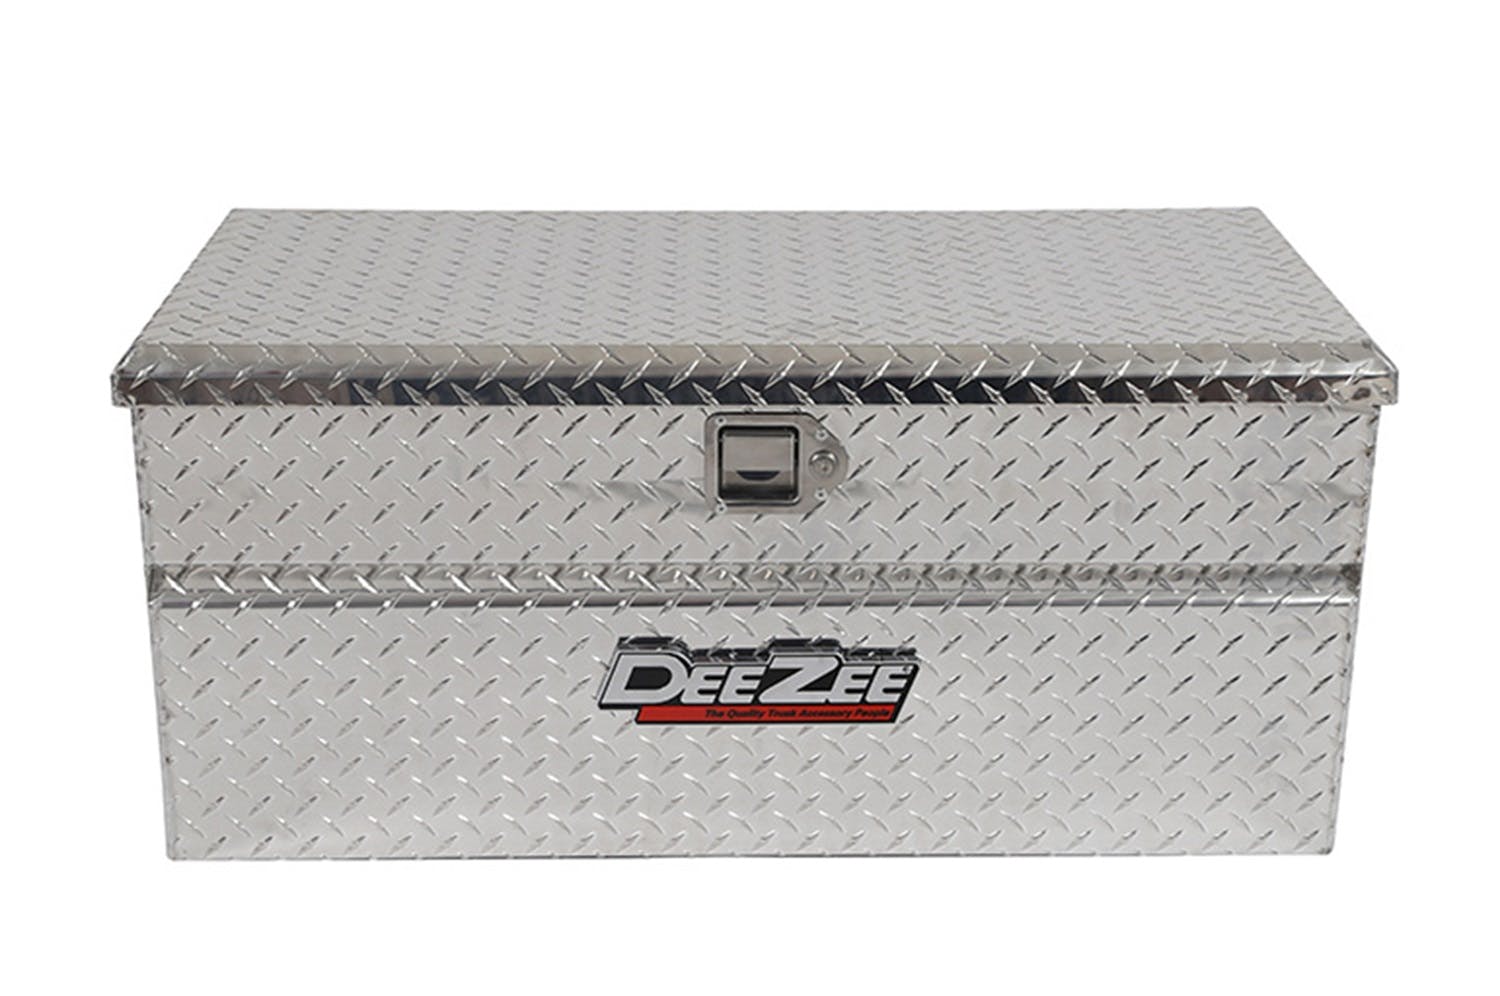 Dee Zee DZ8537 Tool Box - Red Chest BT Alum